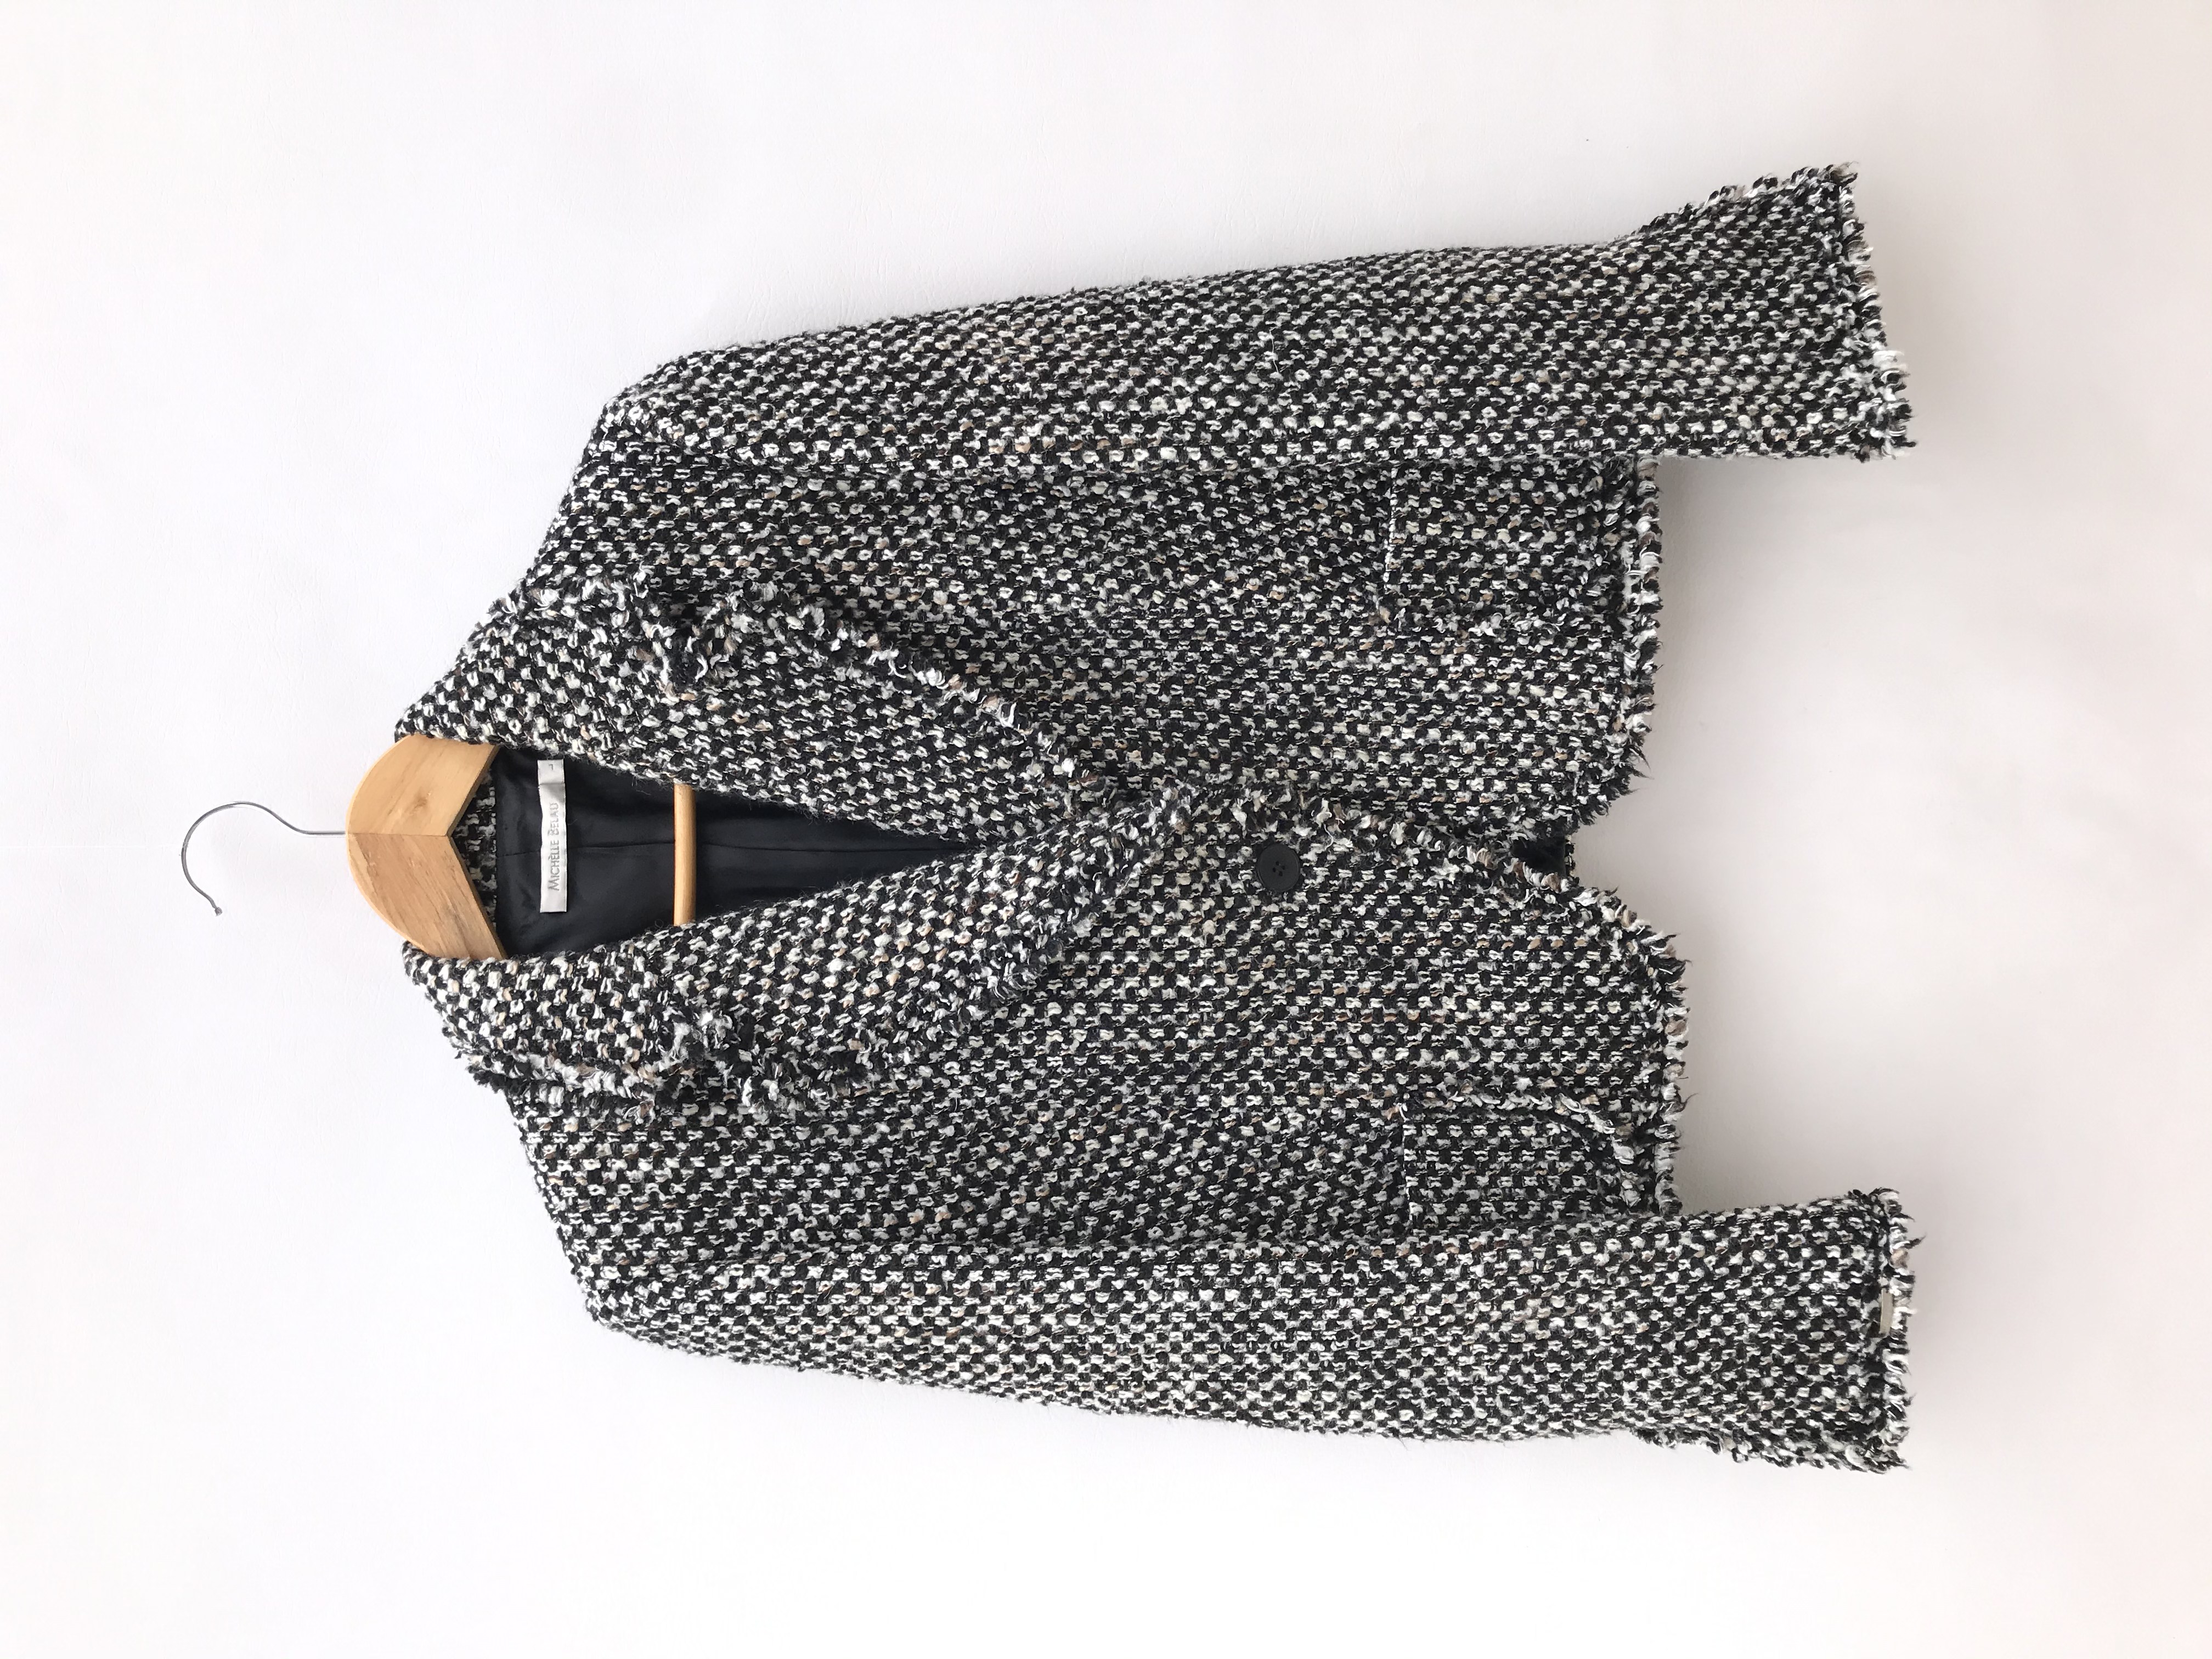 Abrigo Michelle Belau tipo tweed en tonos crema, negro y marrón, forrado, de un solo botón y bolsillos delanteros. Precio original S/ 350